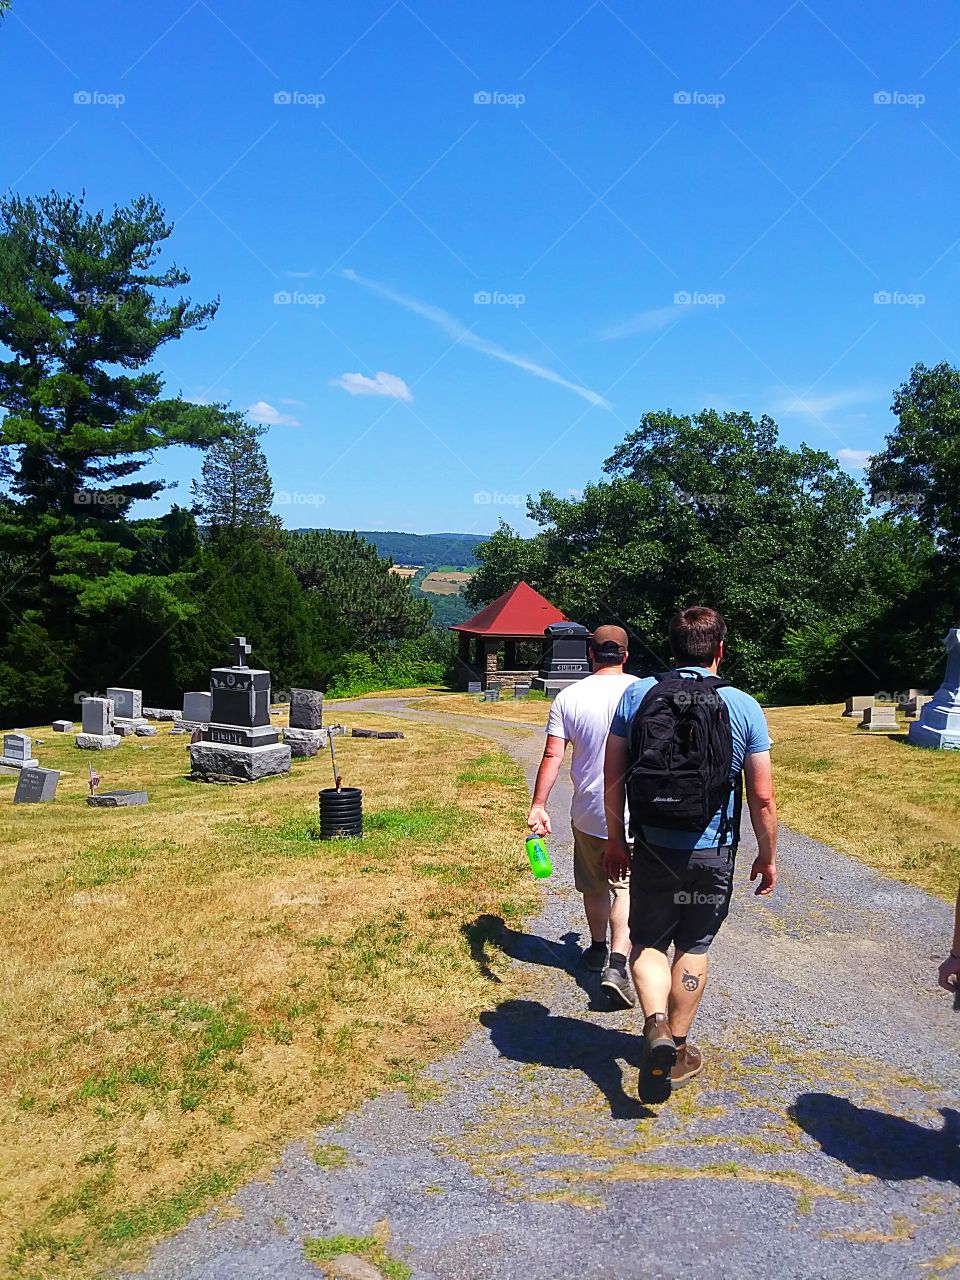 Walking in the cemetery in Watkins Glen NY. So peaceful.